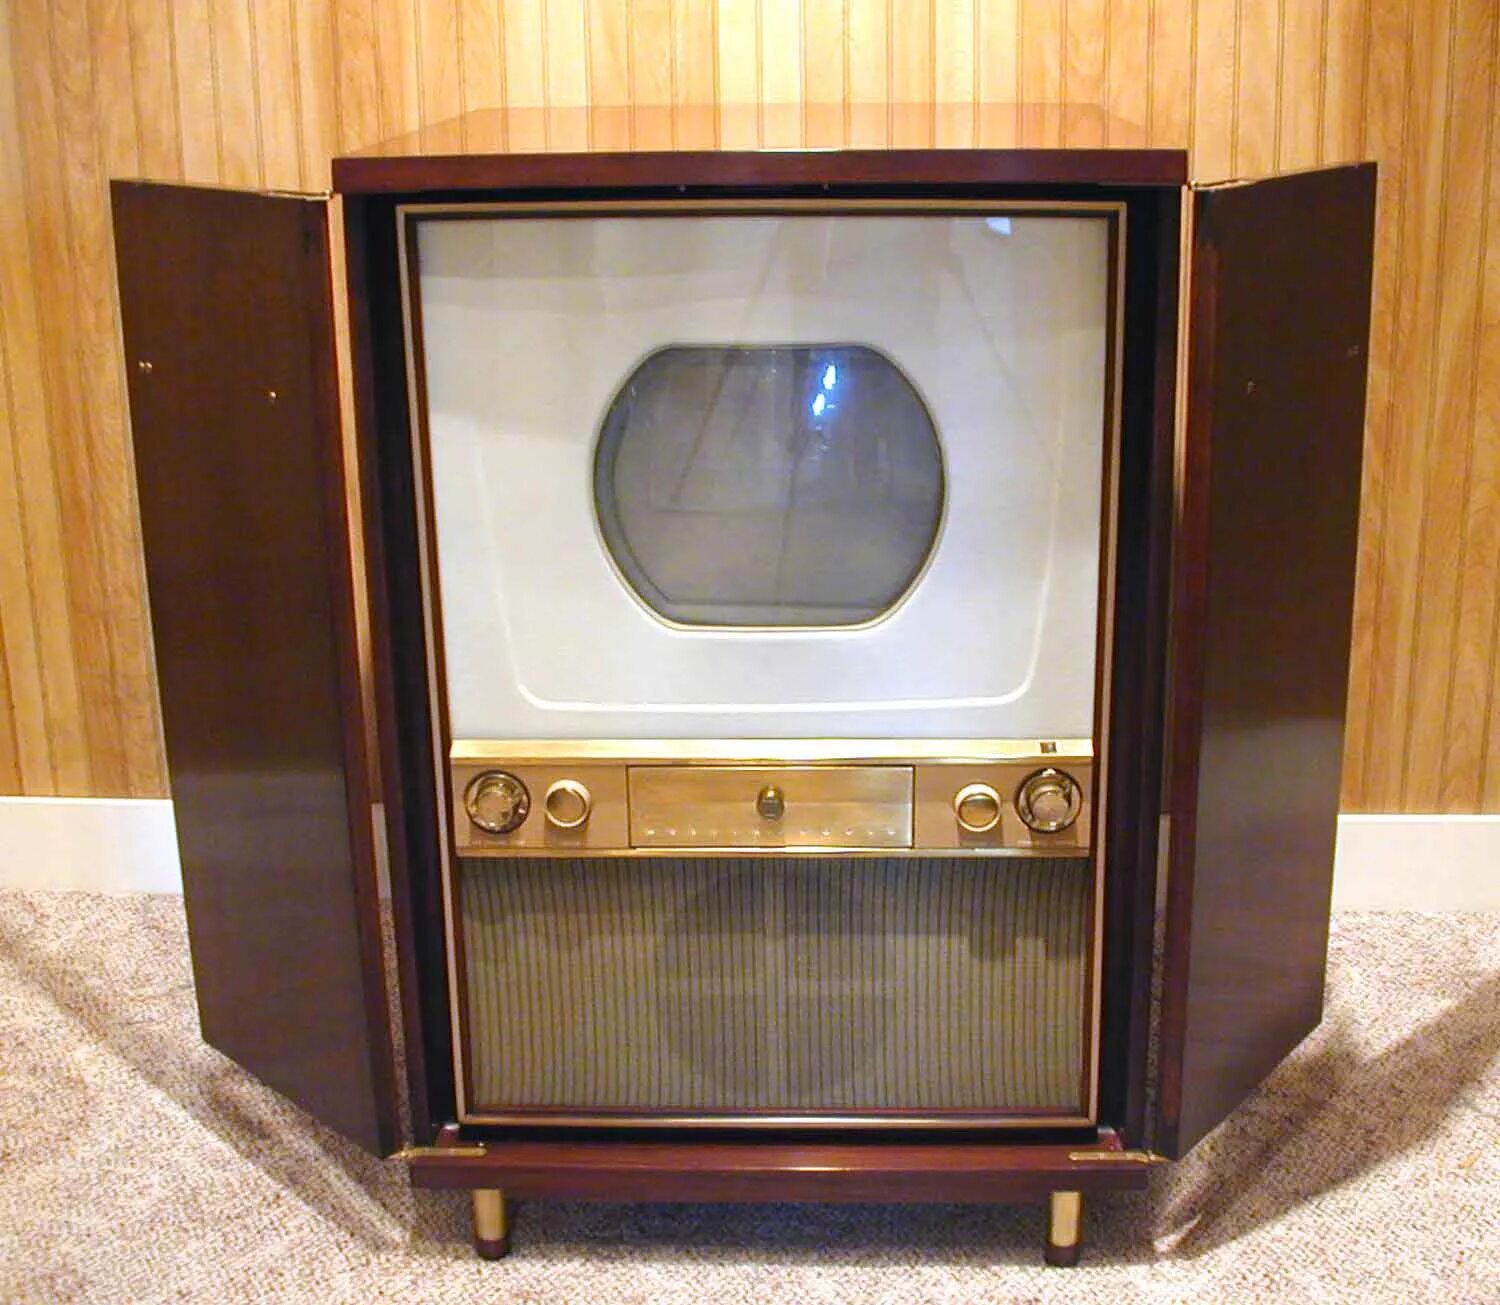 Westinghouse h840ck15. Первый цветной телевизор 1954. Телевизор Авангард 1954. Цветной телевизор Зенит 1954.